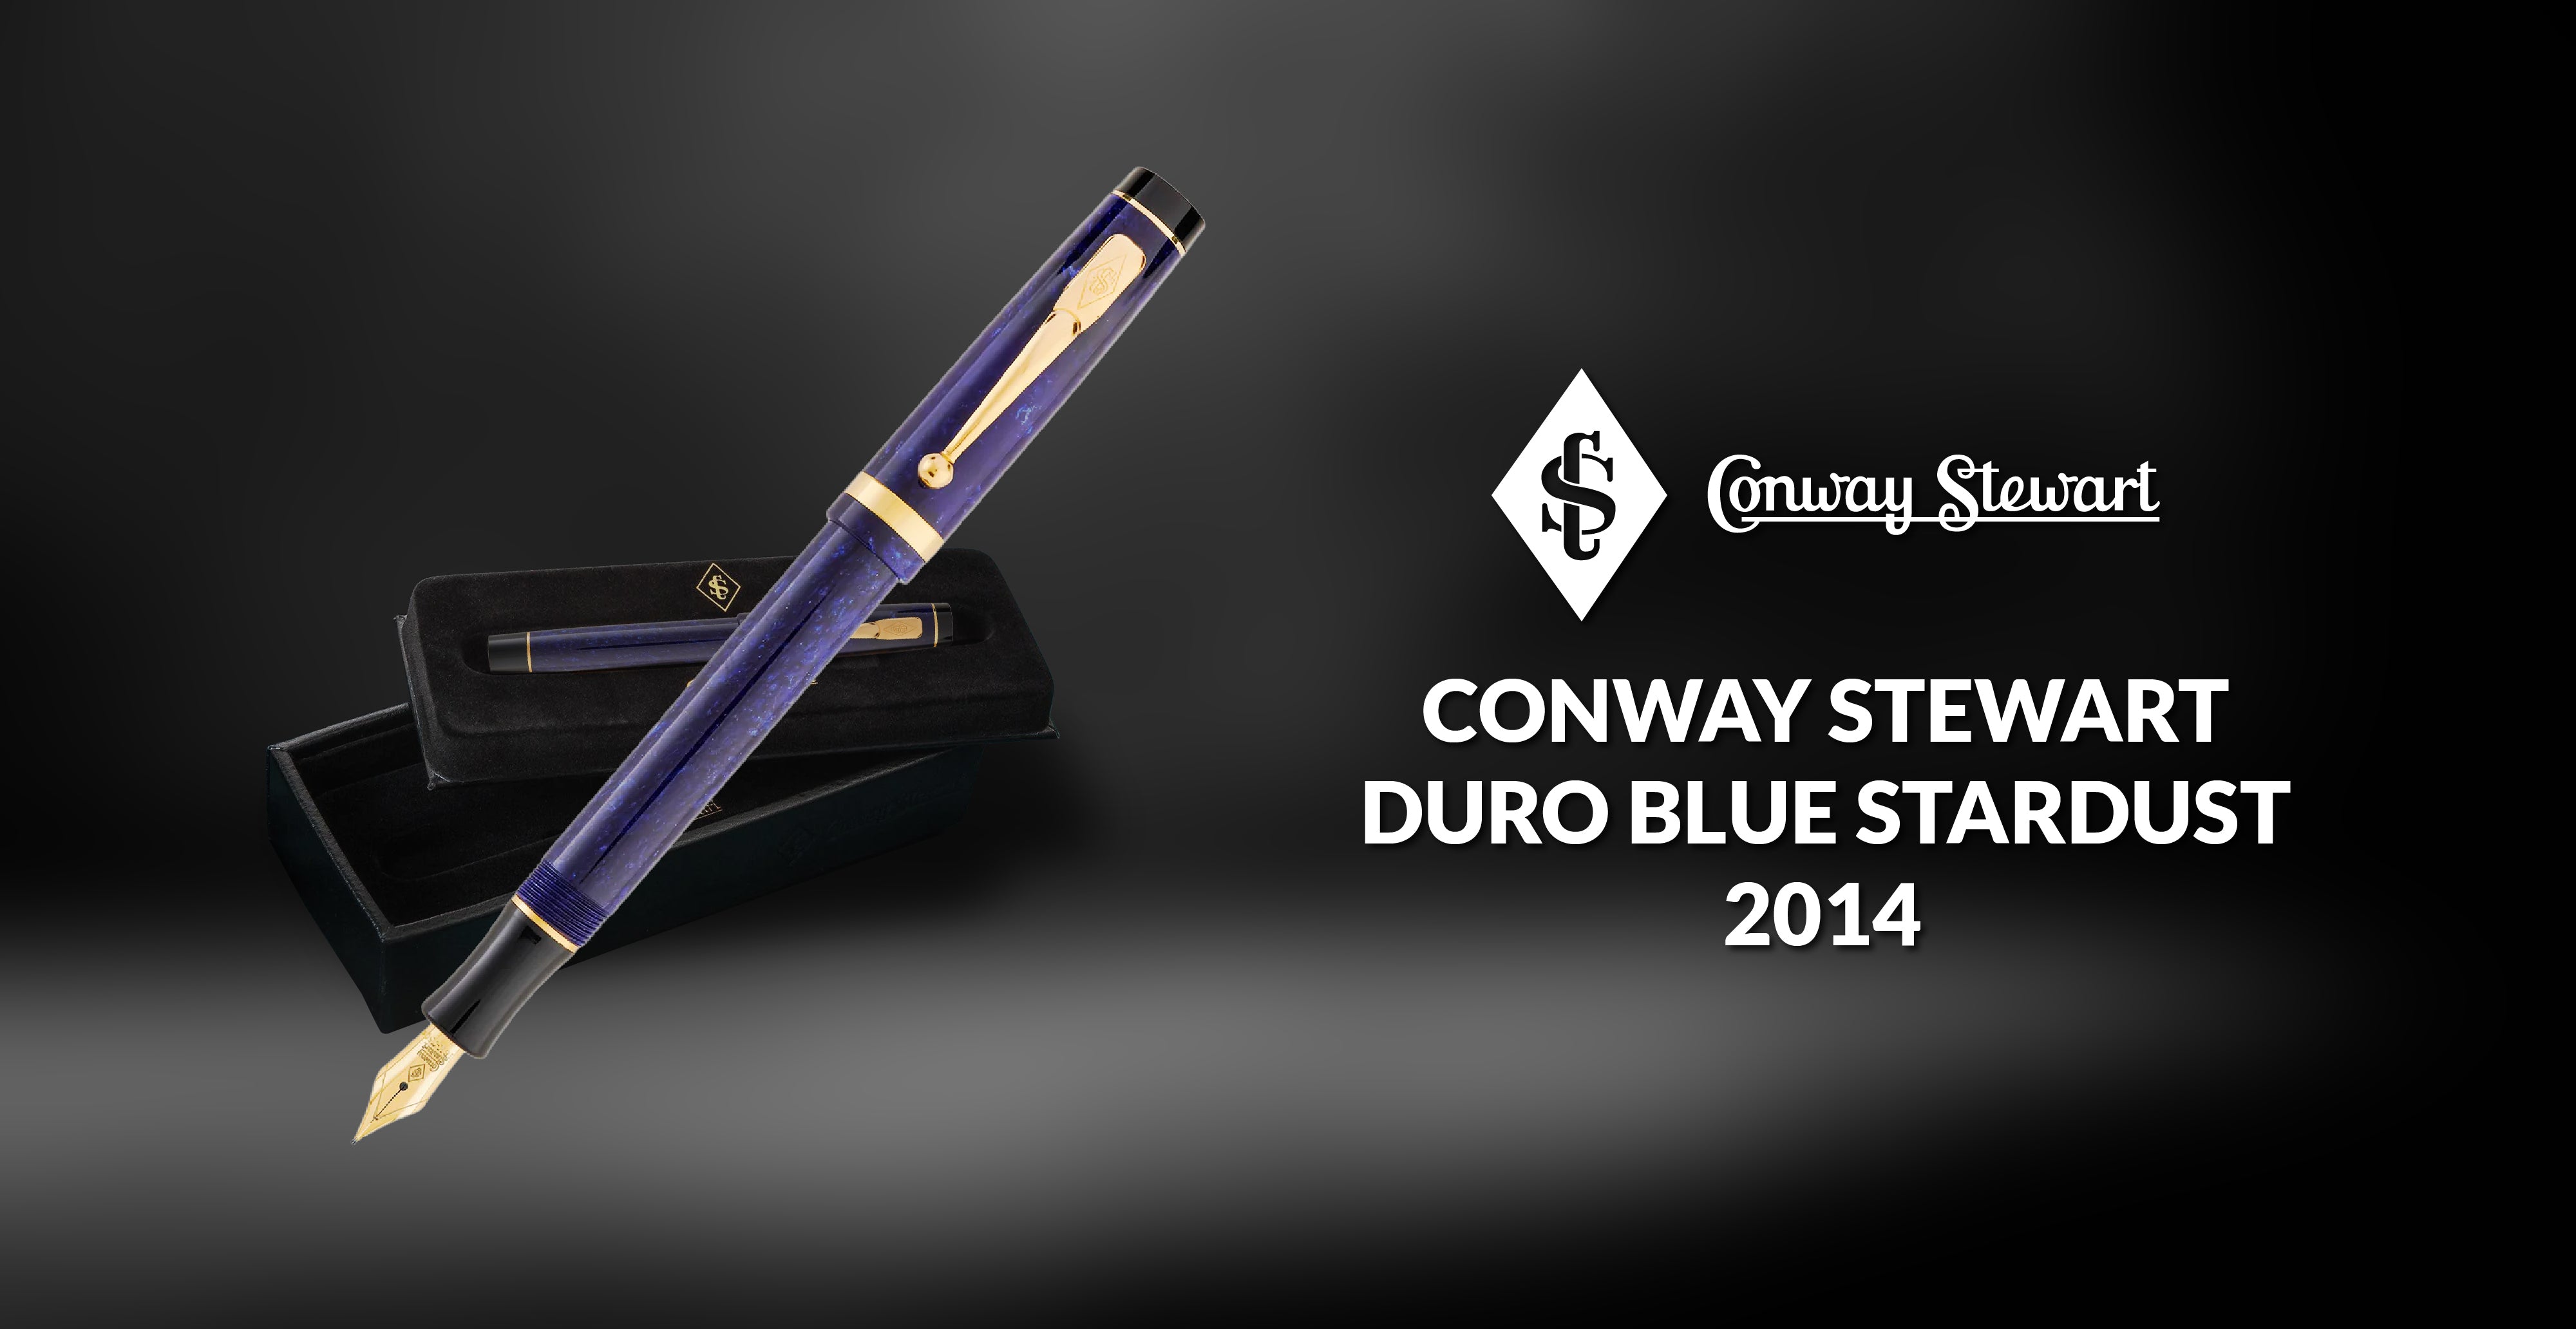 Conway Stewart Duro Blue Stardust, 2014 - Conway Stewart